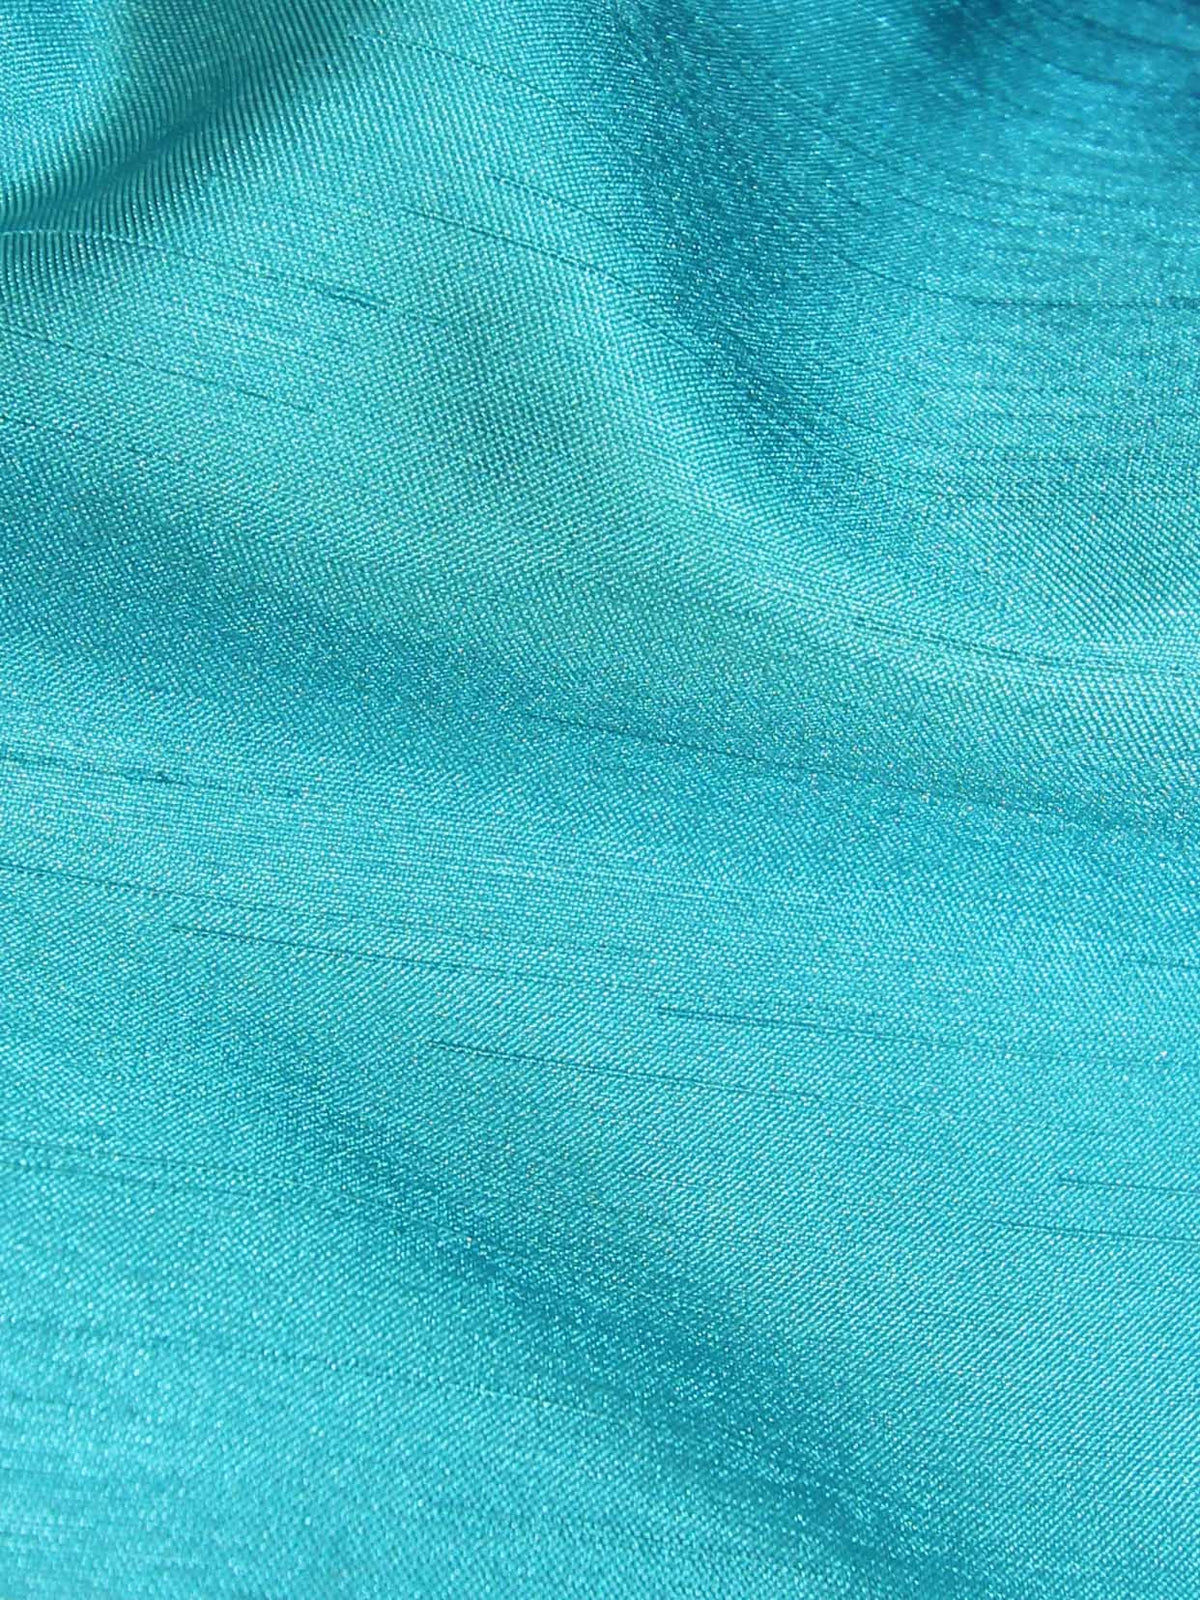 Dupion en satin de polyester turquoise - Clarté